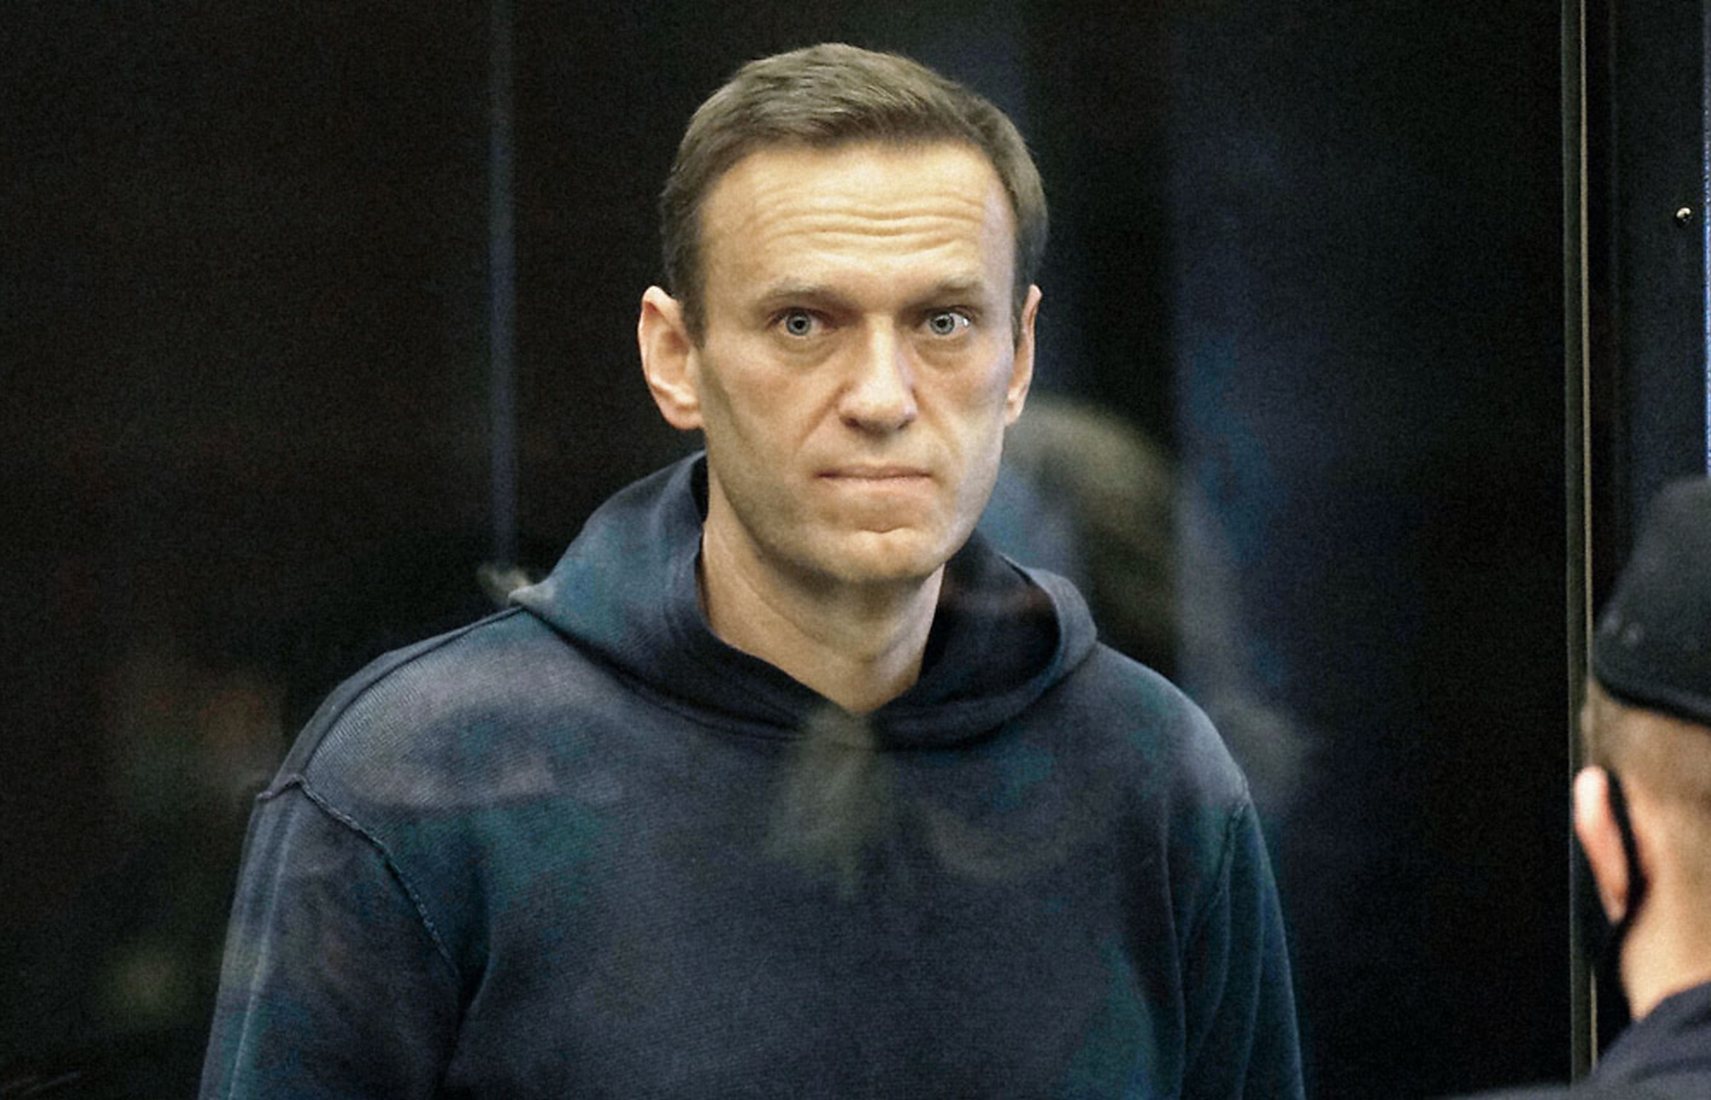 Мировые знаменитости направили письмо Путину по поводу болезни Навального